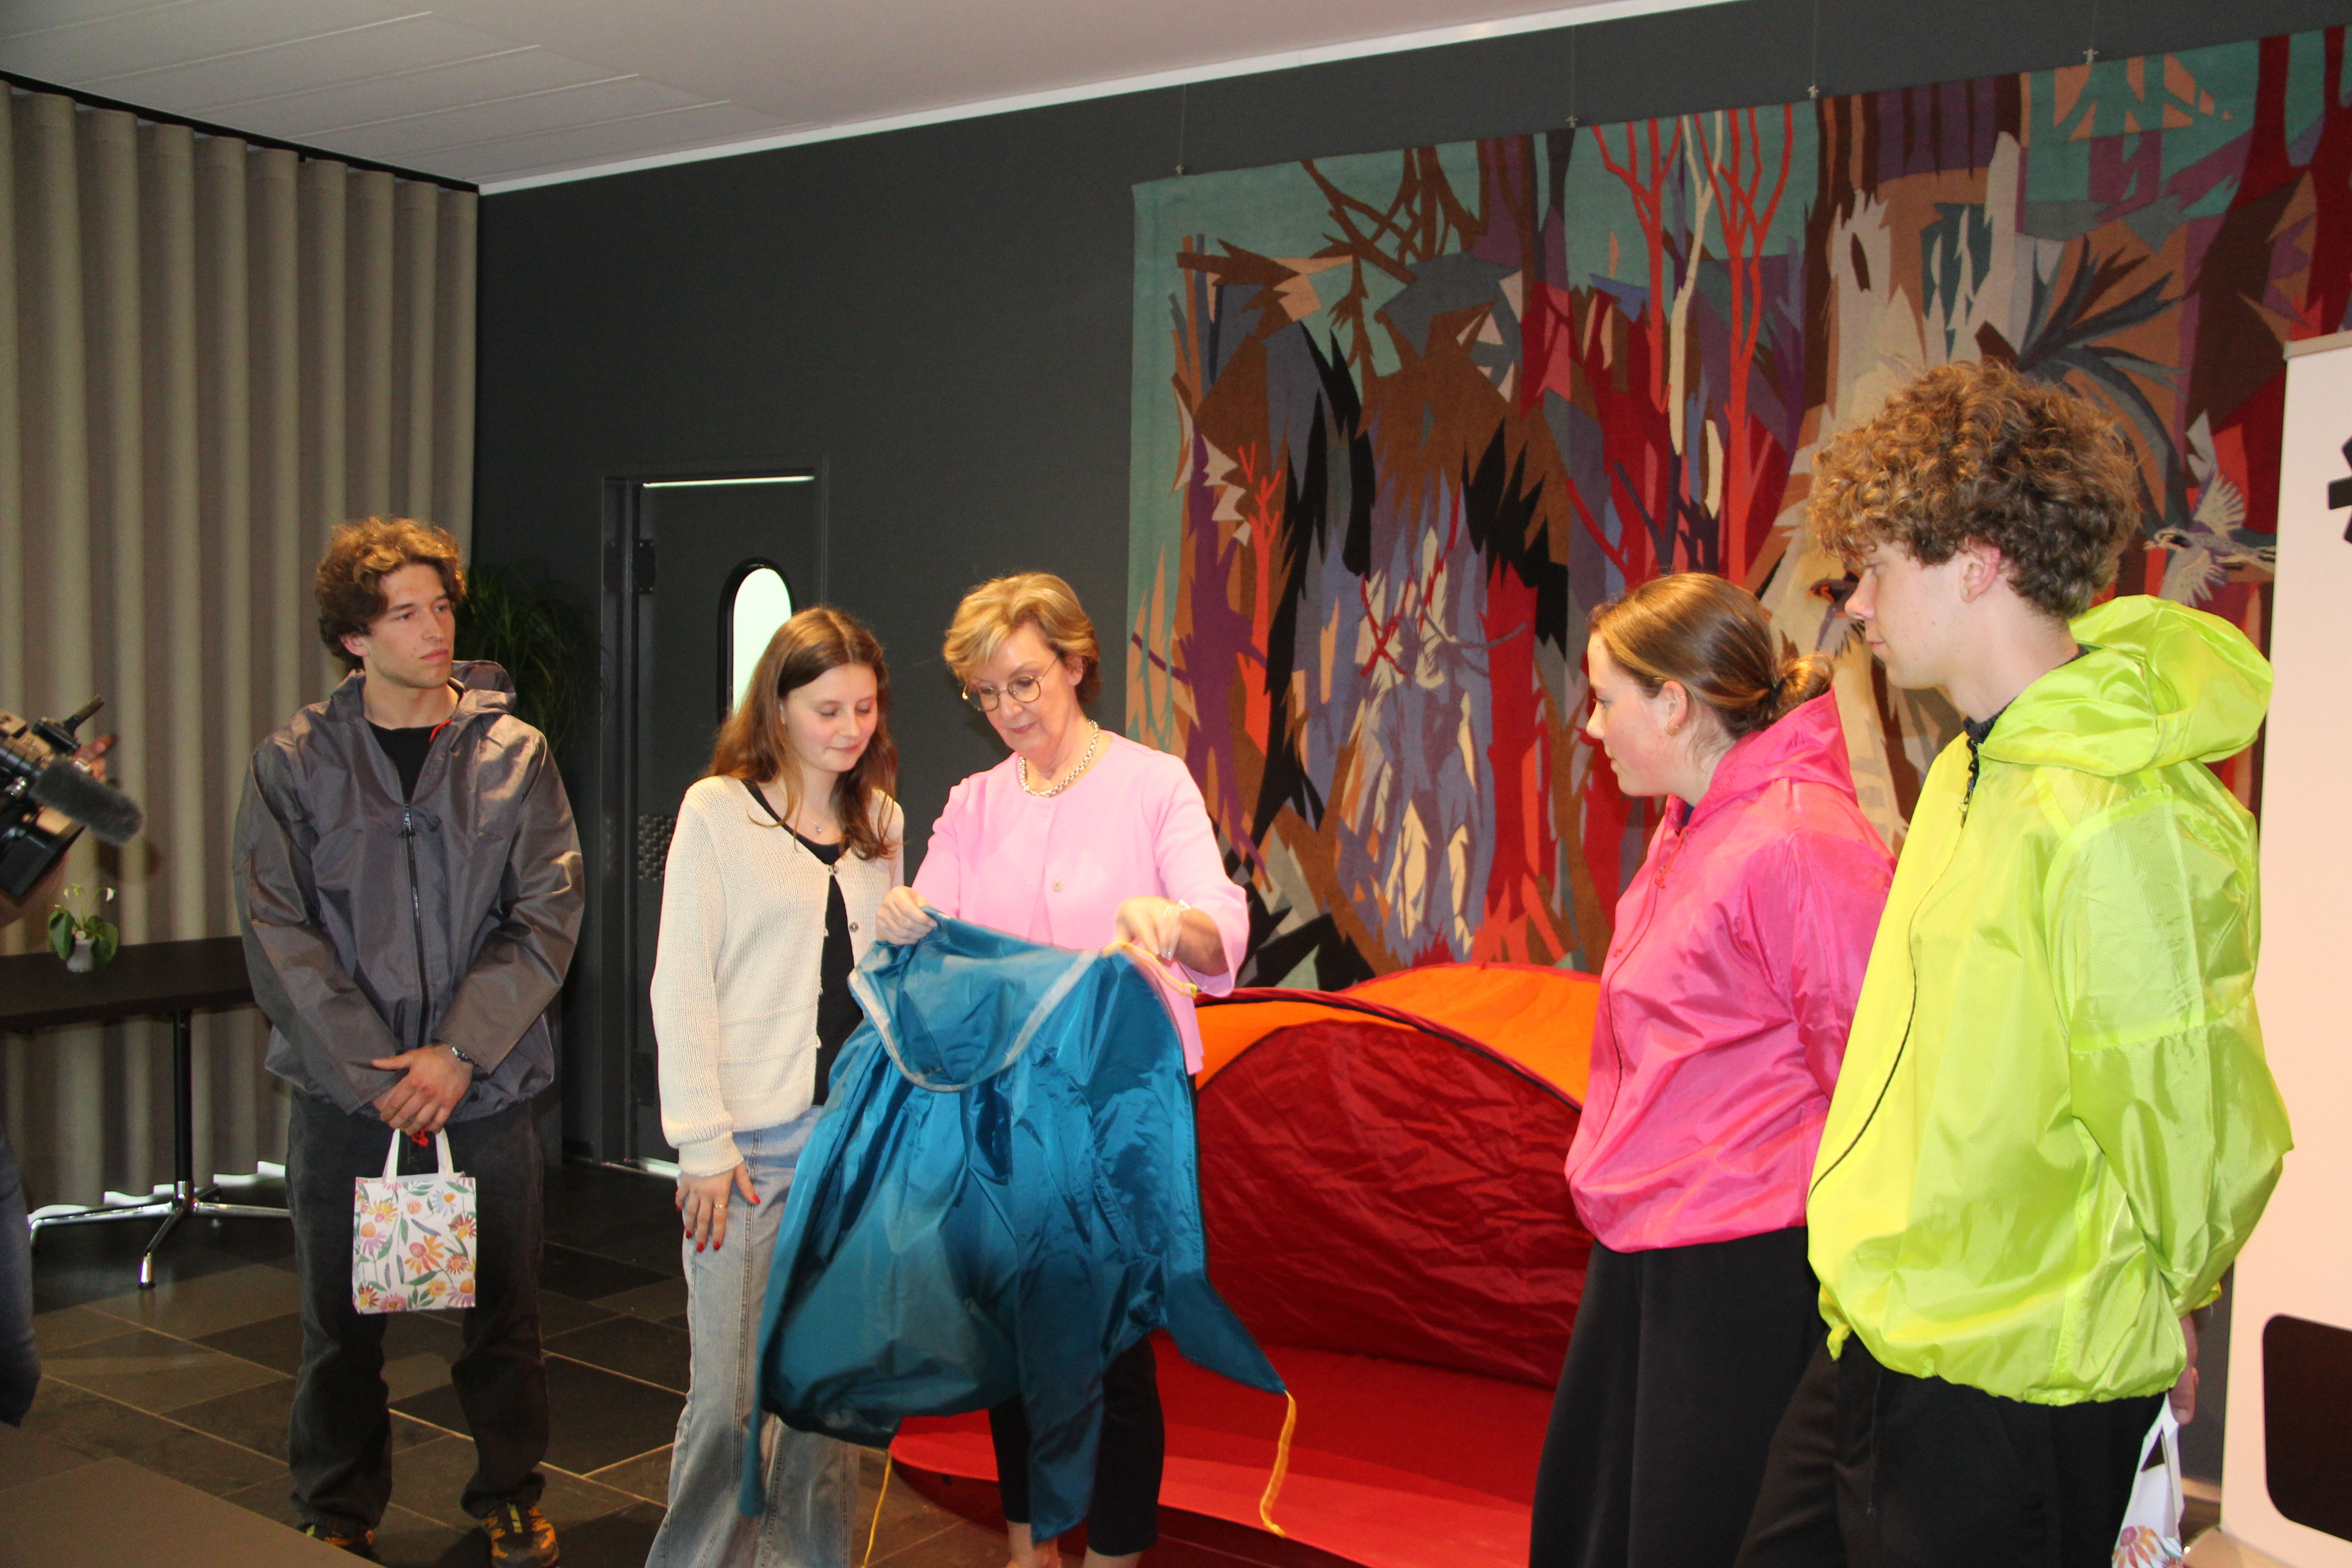 Op 6 mei werden de leerlingen van de mini-onderneming ZIP gehuldigd door gedeputeerde Ann Schevenels. Ze maken van 'afgedankte' tenten regenjassen en wonnen zo de circulaire Mini Star Award.